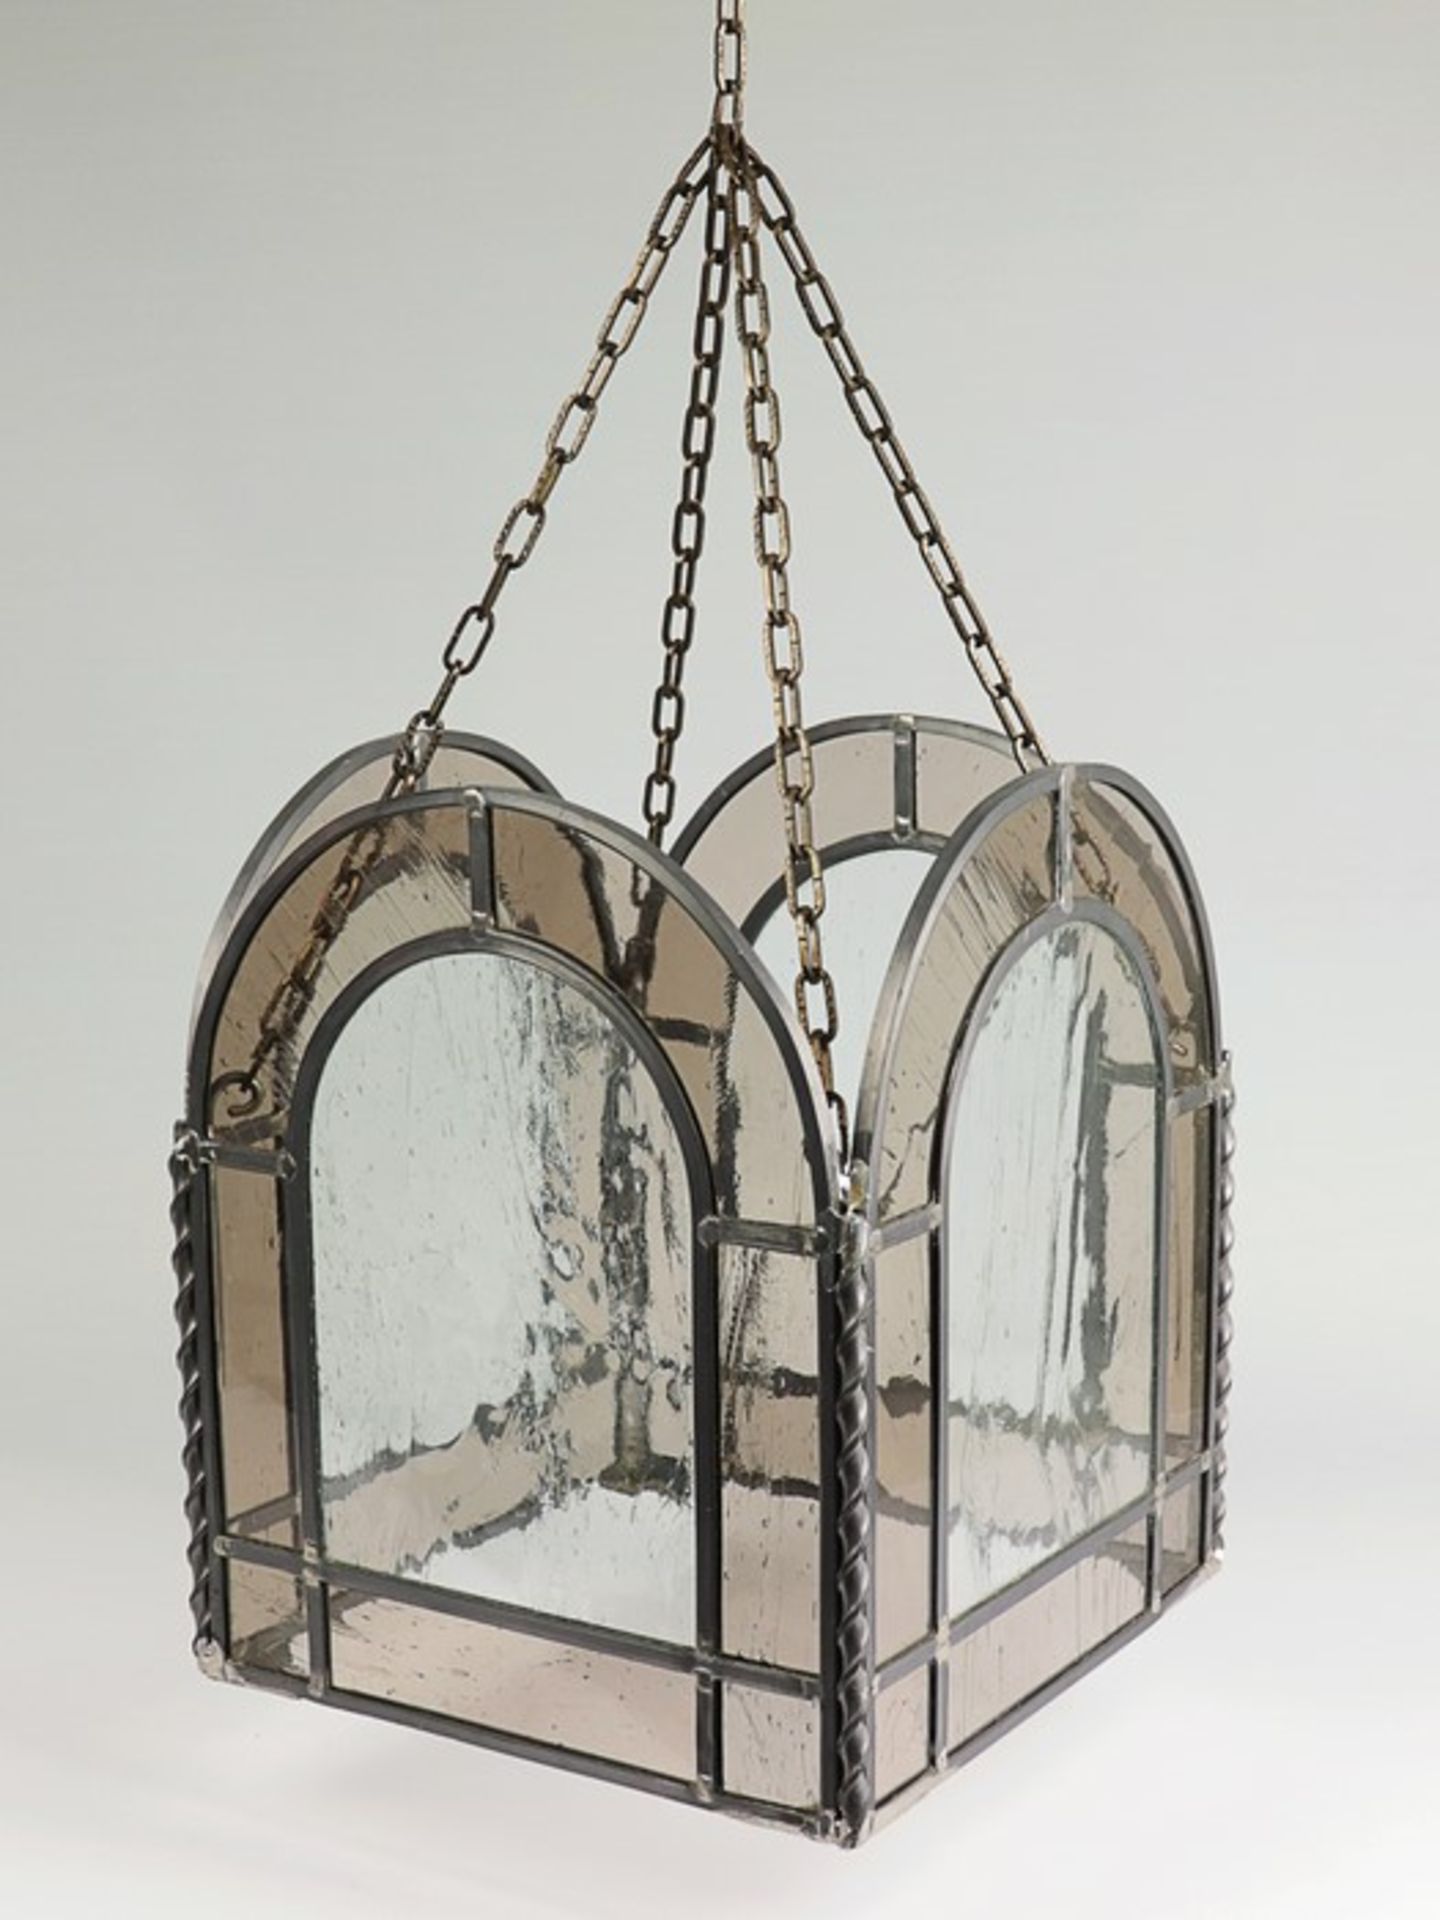 Deckenlaternen - PaarMetall/Glas, bleiverglaster Korpus, Blaseneinschlüsse, quadratische Form, - Image 2 of 3